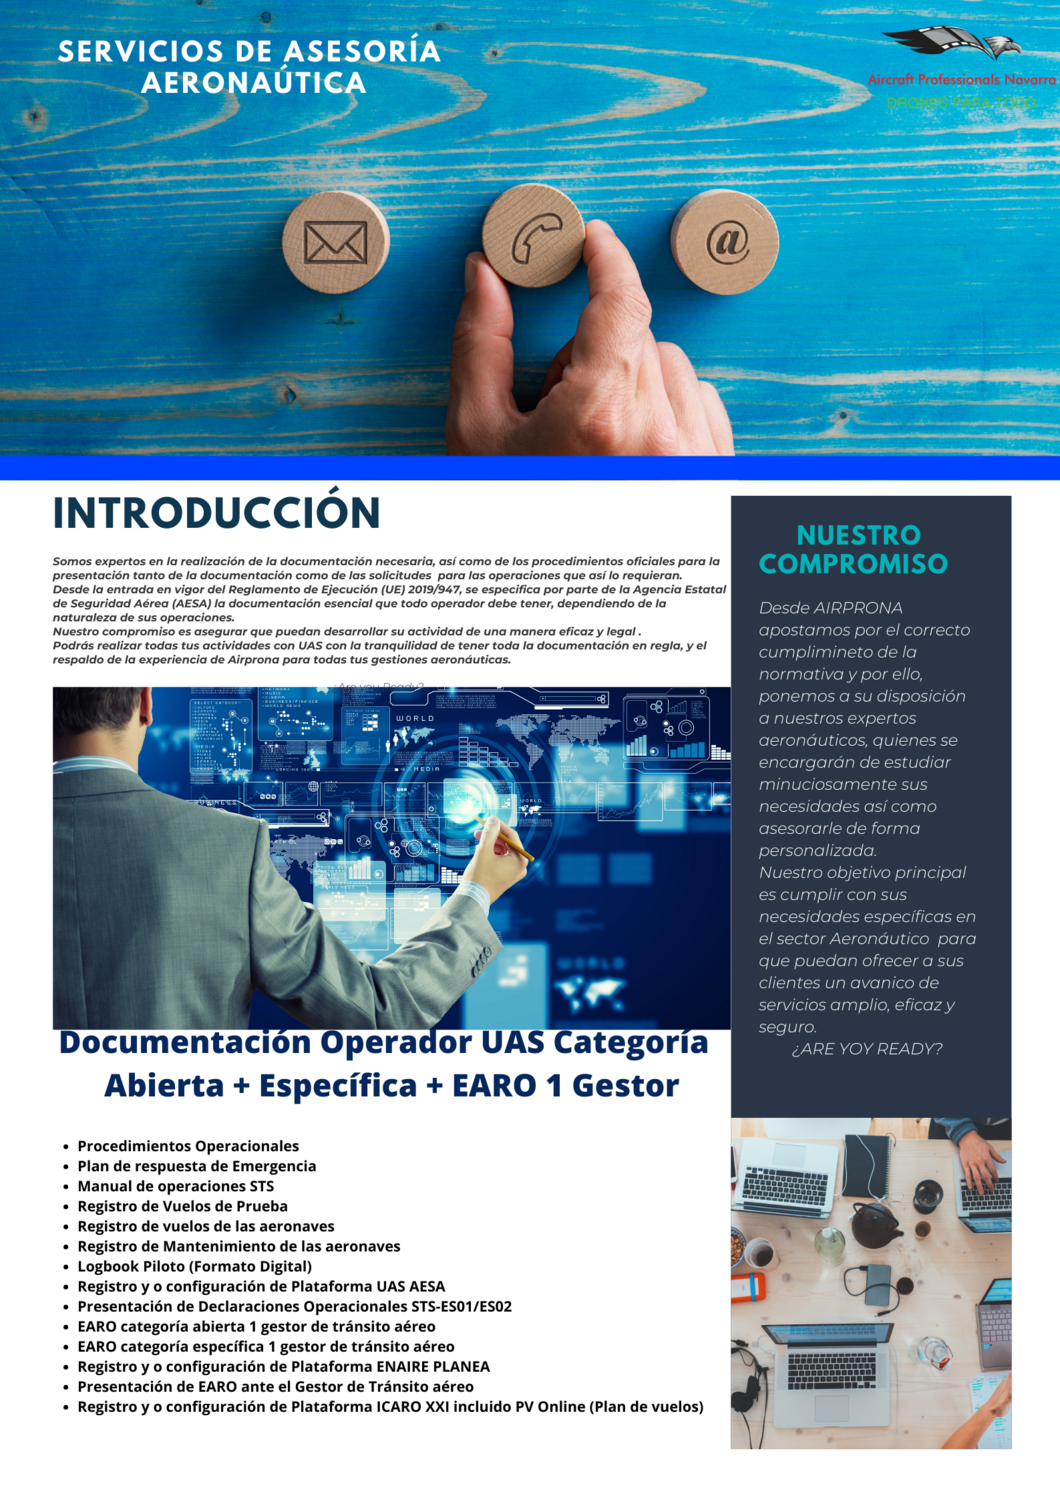 "Documentación Operador UAS Categoría
Abierta + Específica + EARO 1 Gestor"